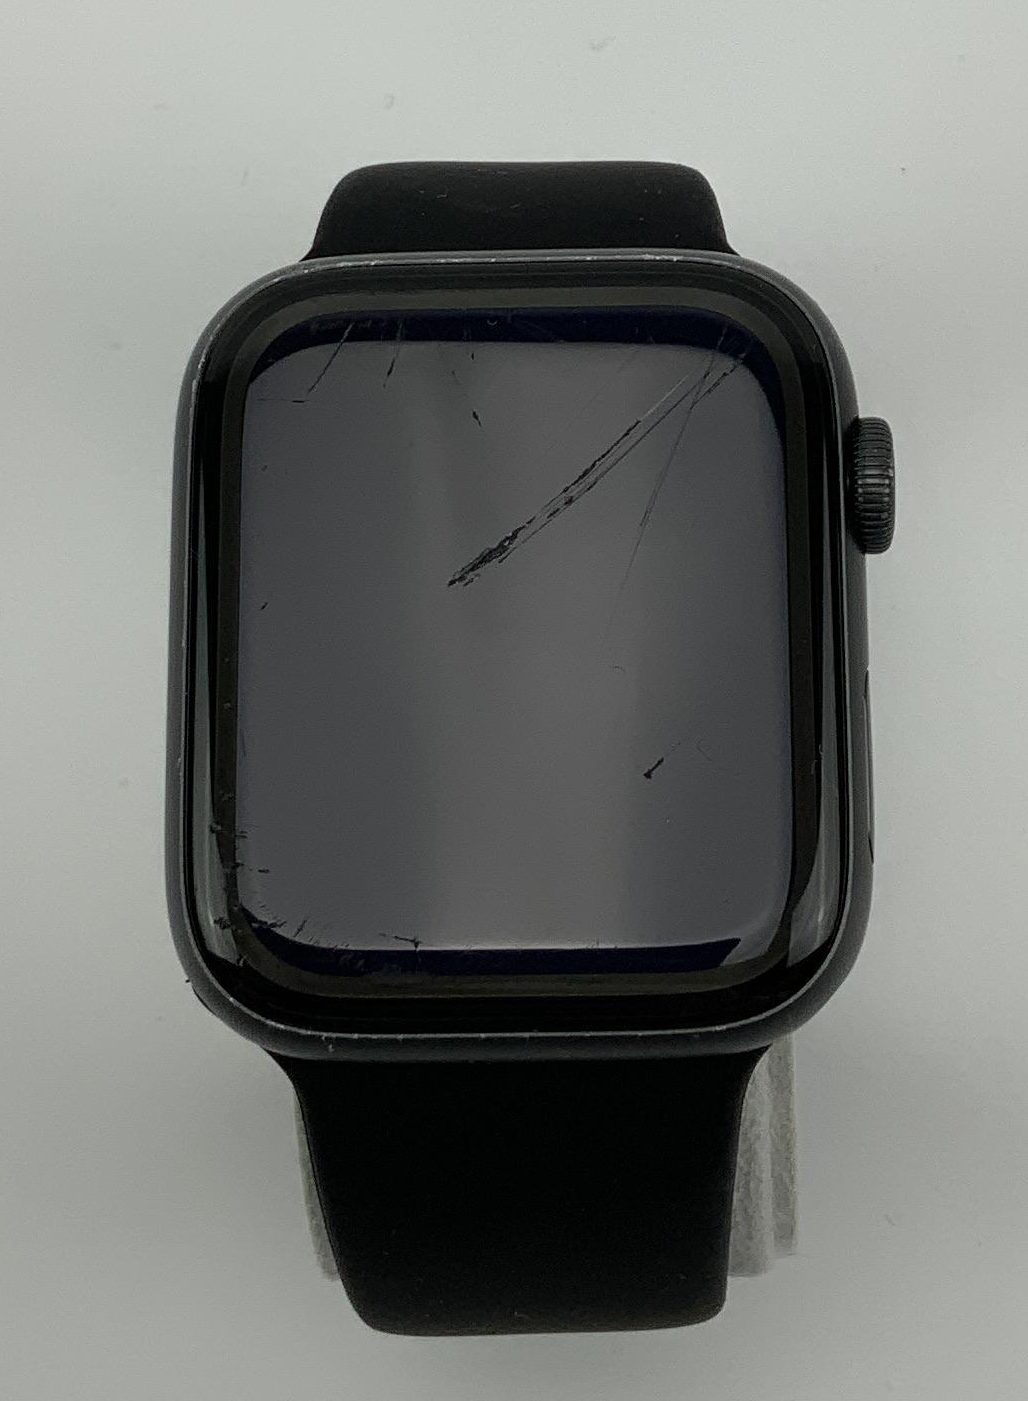 Watch Series 5 Aluminum (44mm), Space Gray, imagen 1